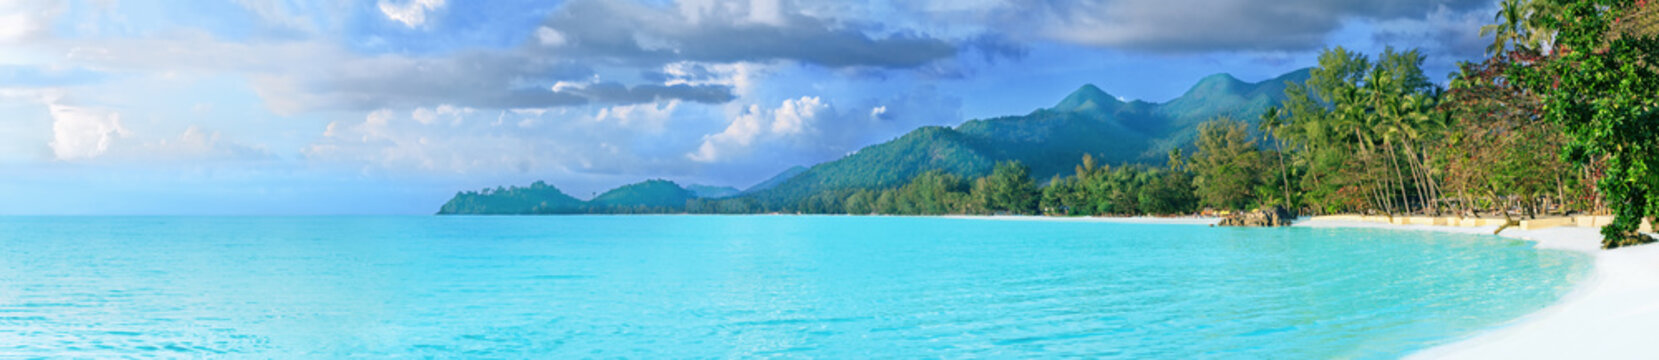 Fototapeta Piękna tropikalna Tajlandia wyspa panoramiczna z plażą, białym morzem i kokosowymi palmami dla wakacje wakacje tła pojęcia